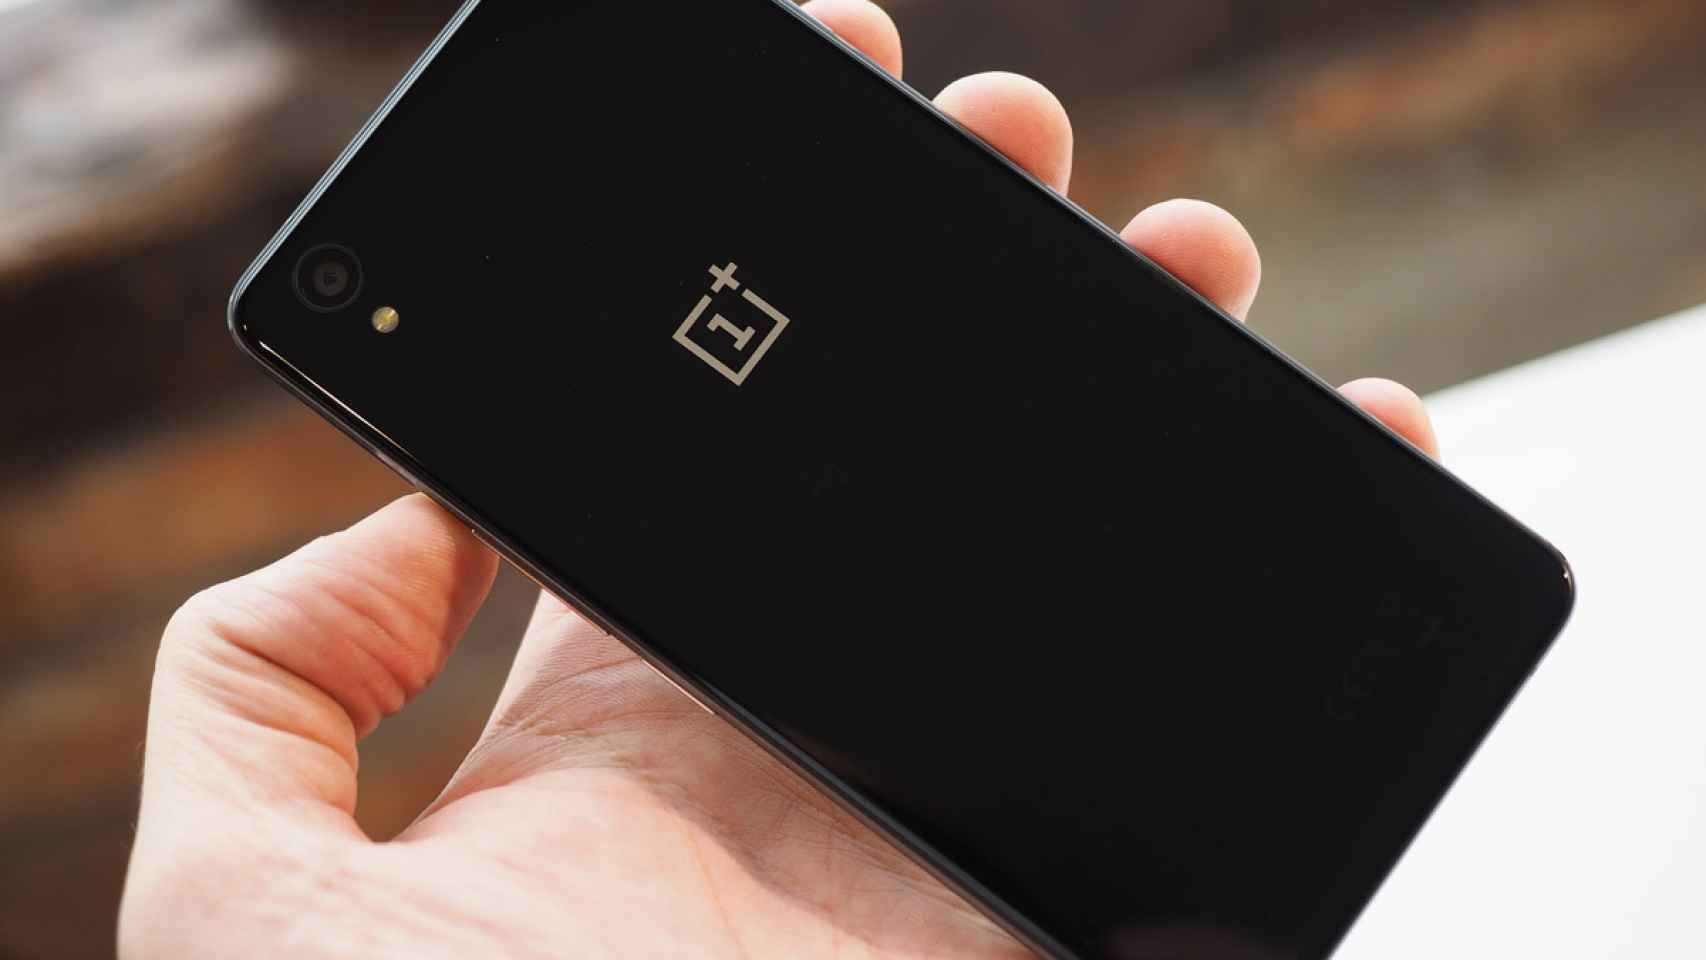 No habrá un OnePlus X2, confirmado por el fabricante